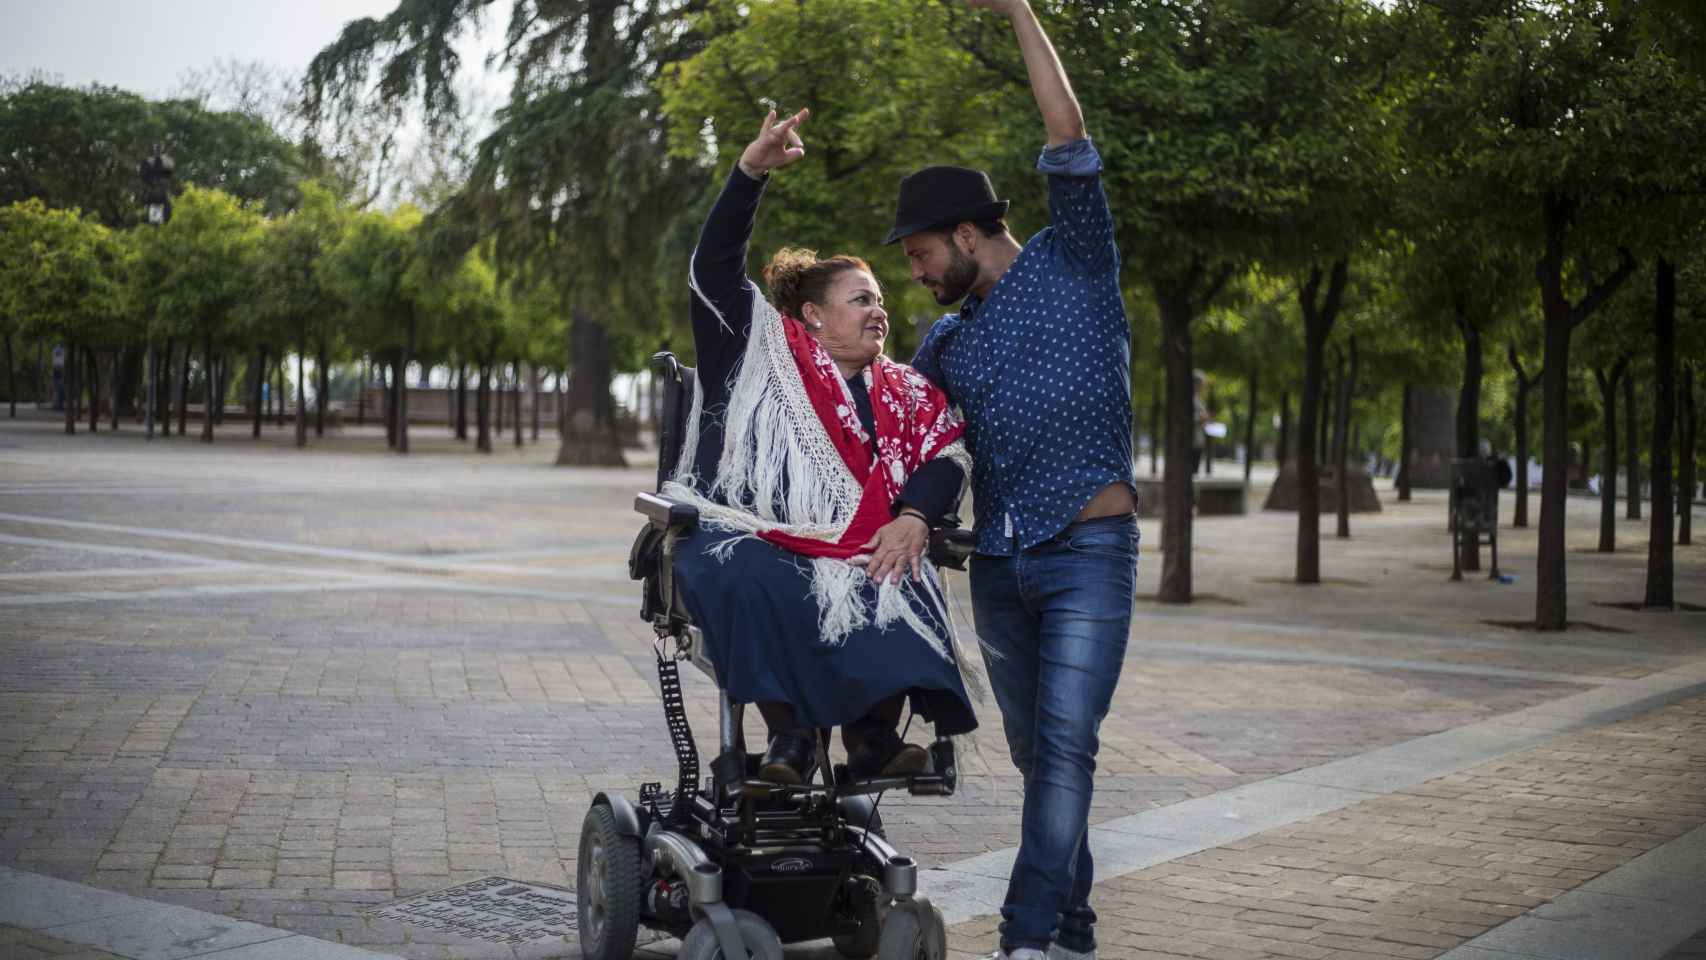 El bailaor e impulsor de flamenco inclusivo josé Galán y su alumna Maricarmen Menacho bailando sevillanas.